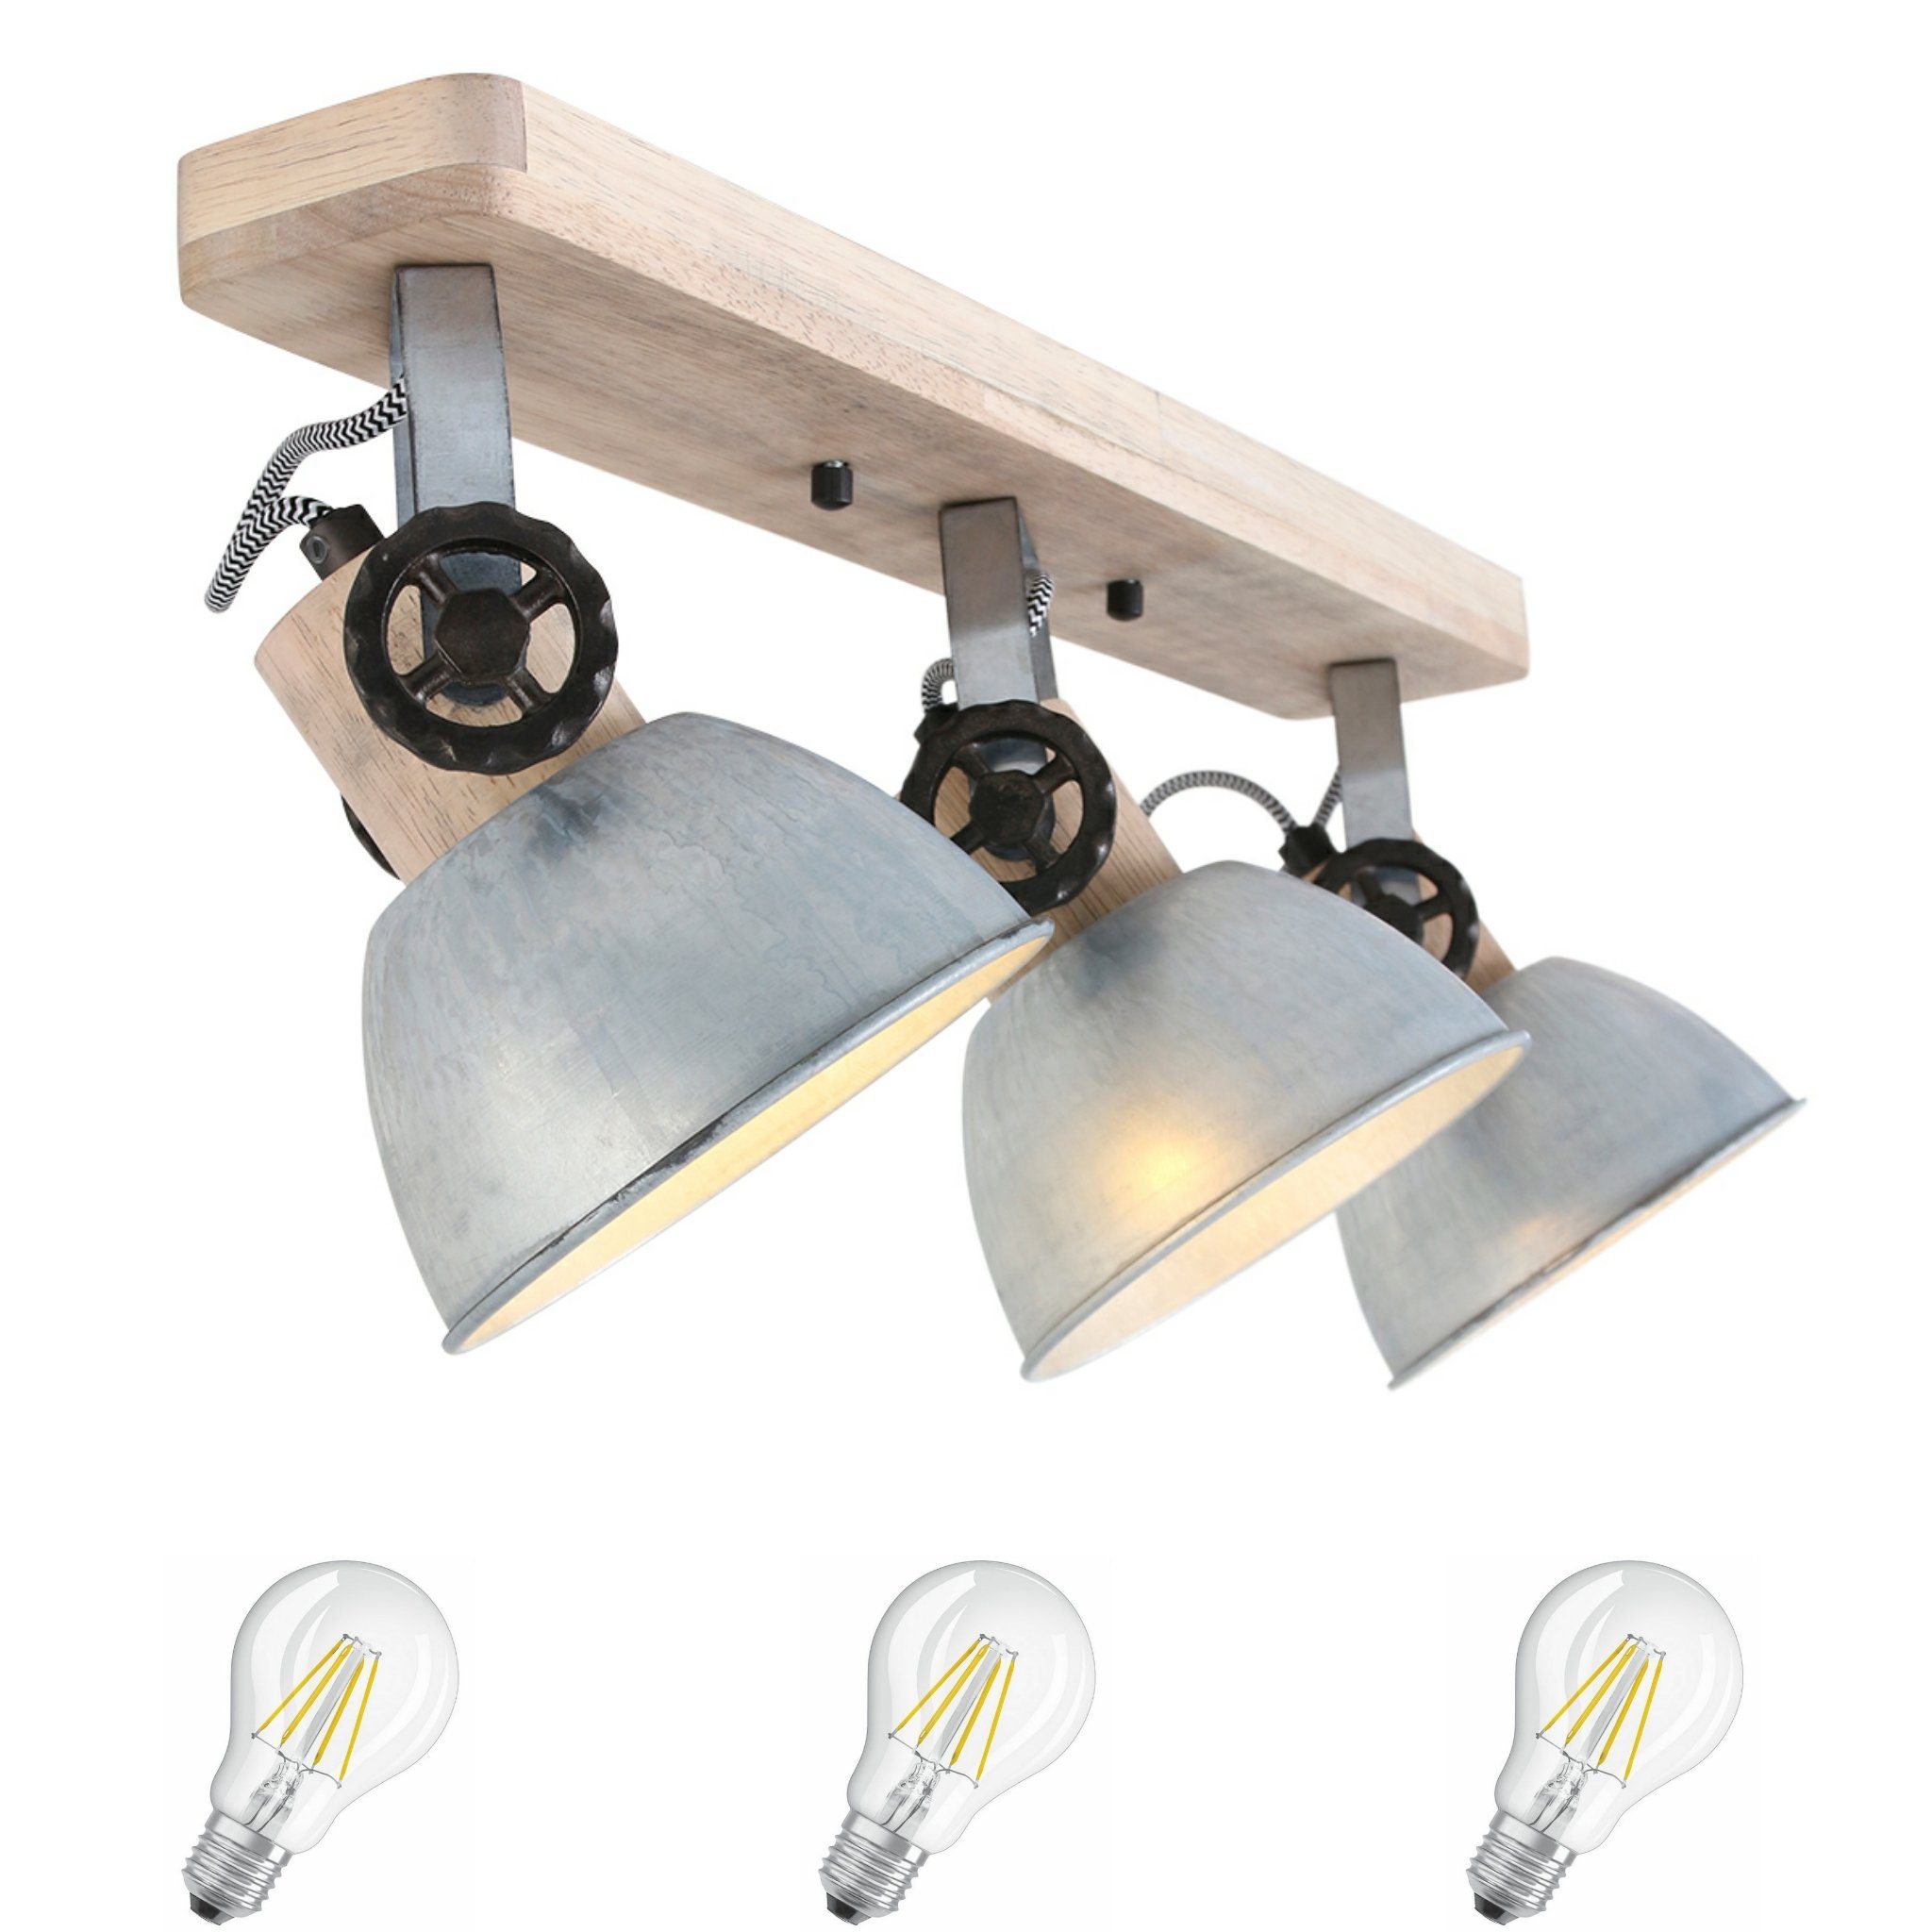 Lichthandel Hoch LED Deckenleuchte moderne Deckenlampe Industrie Vintage Retro Holz Metall incl. 7W LED, LED wechselbar, Warmweiß 2133Nickel